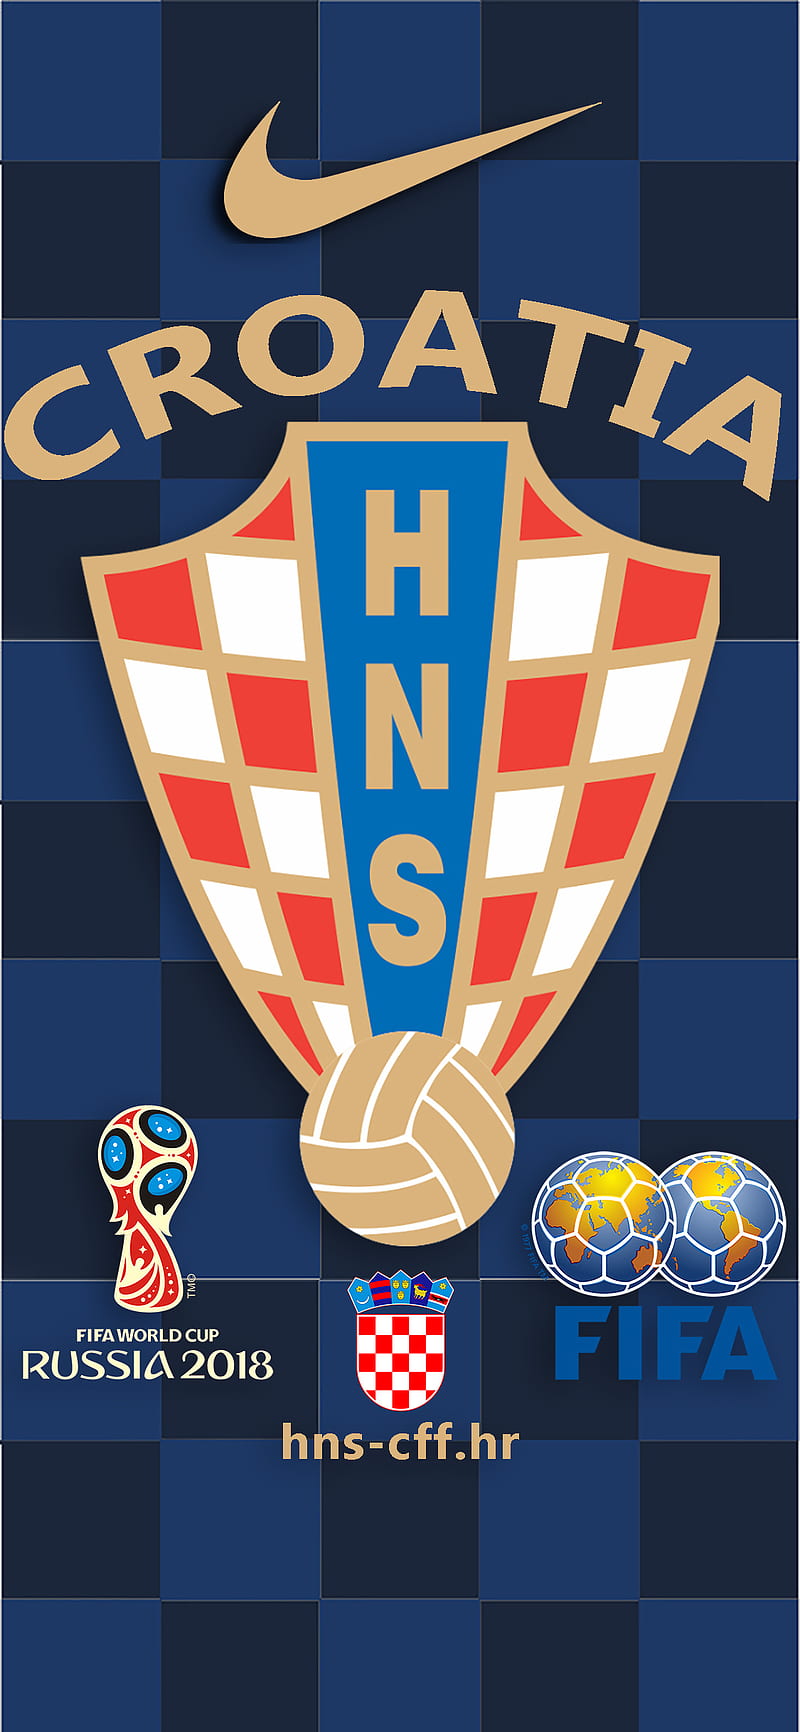 Croatia 2018, cff, fifa, hirvatistan, hns, hrvatski, modric, pes, vida, world cup 2018, HD phone wallpaper